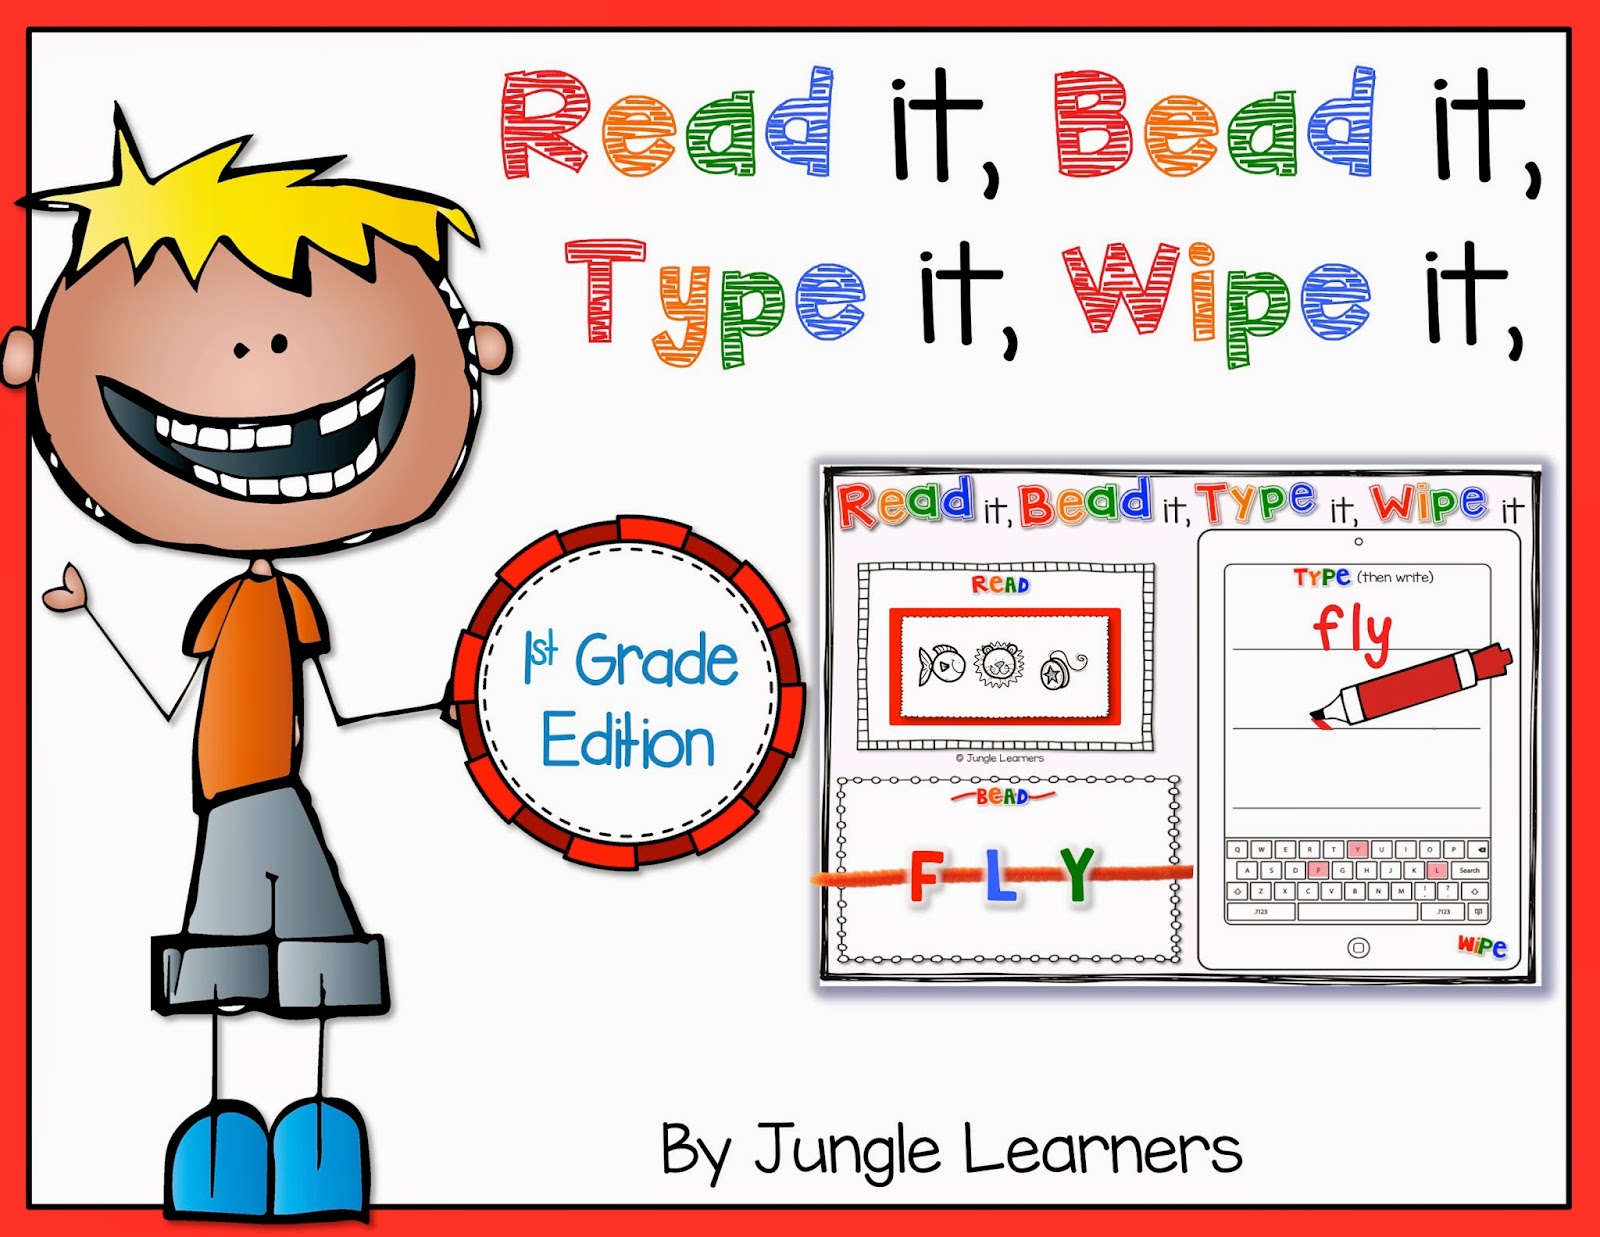 Read it, Bead it, Type it, Wipe it [1st Grade Edition]